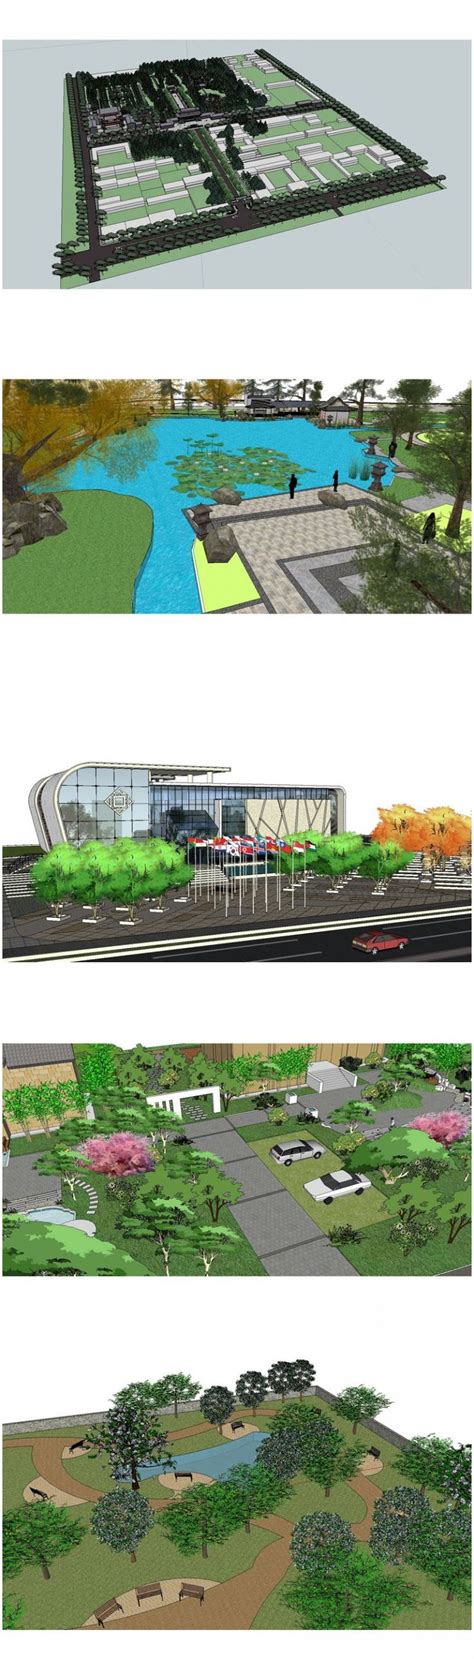 Sketchup 3d Models】20 Types Of Park Landscape Sketchup 3d Models V1